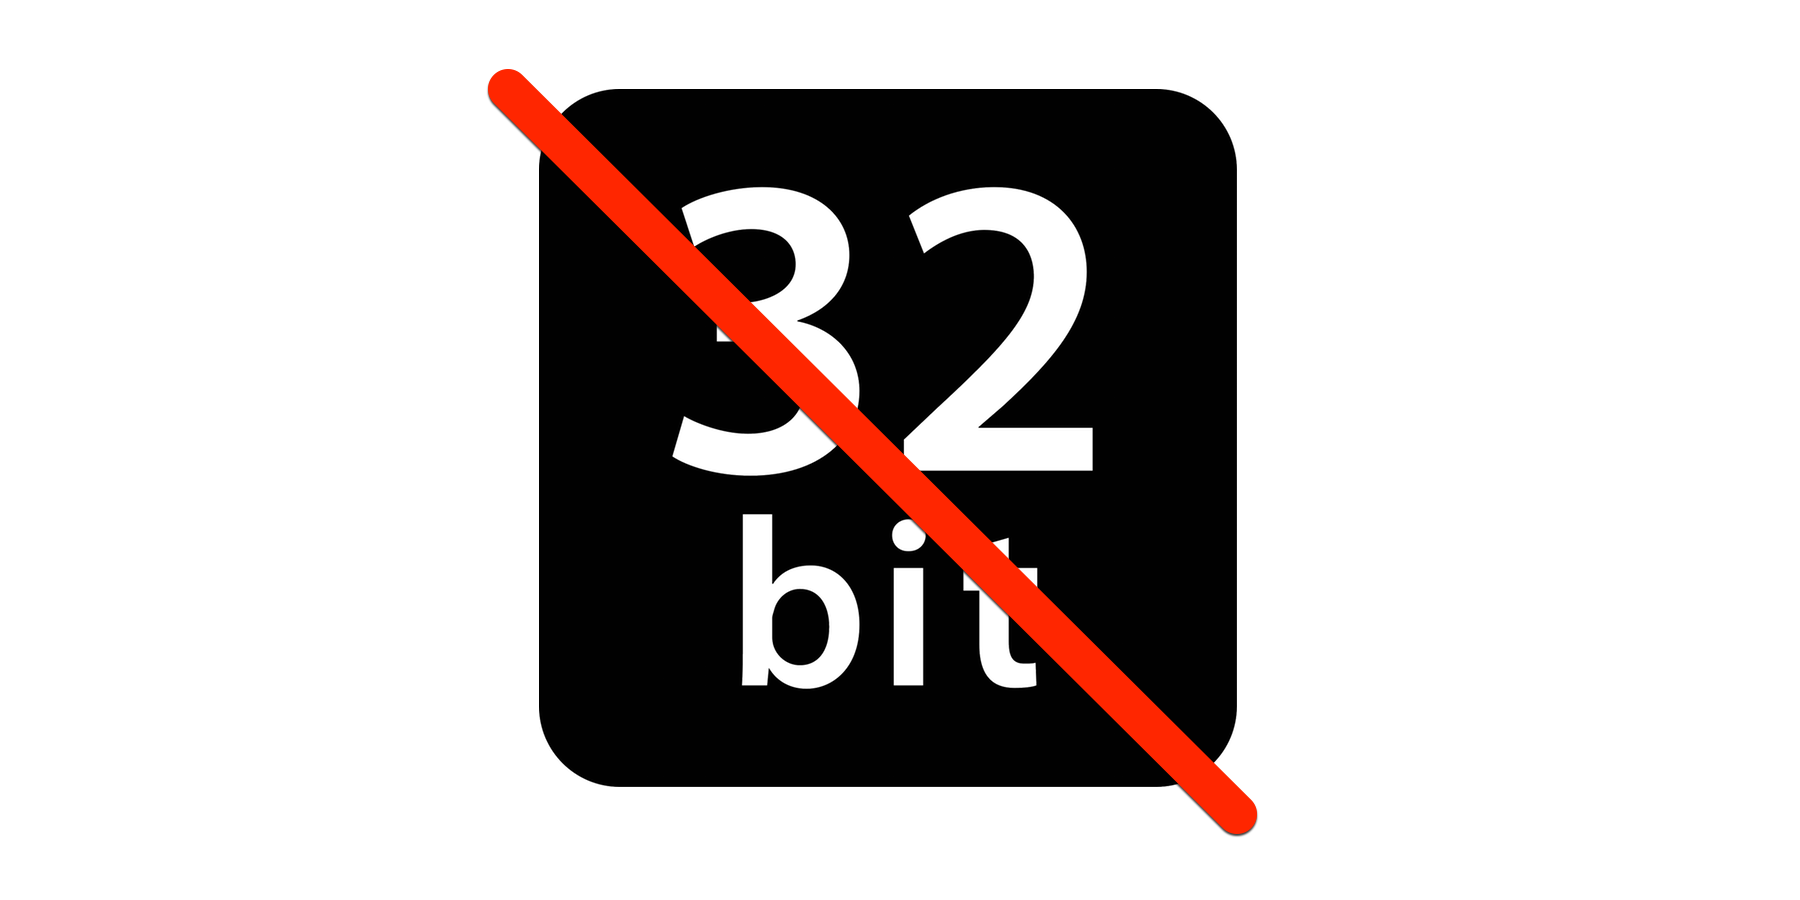 Koniec 32-bitów, jak rozpoznać aplikacje, z trzeba będzie się pożegnać